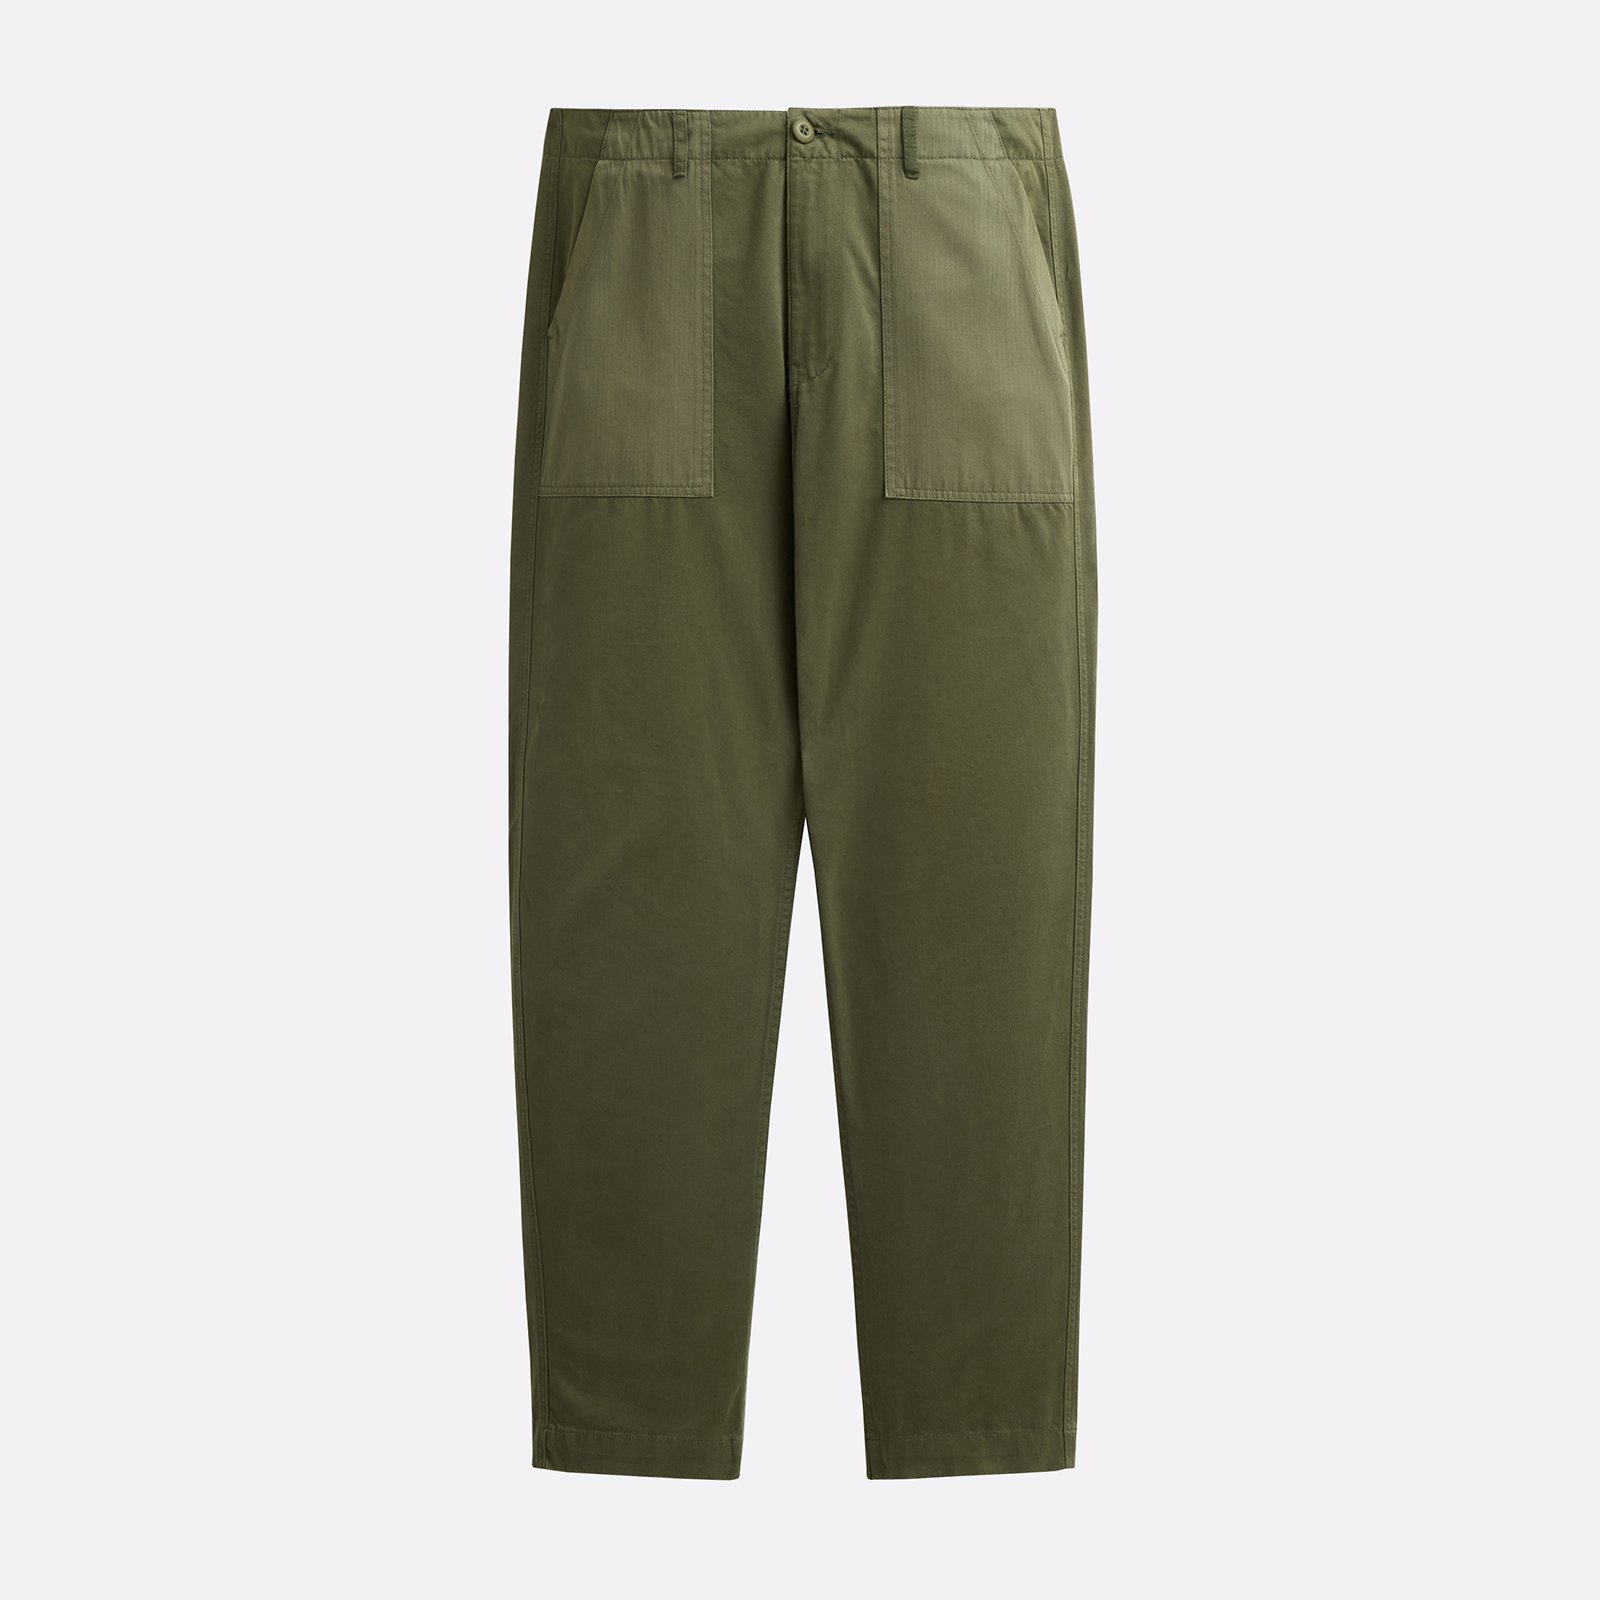 мужские зеленые брюки Alpha Industries Fatigue Pant MBO52500C1-OG-107-green - цена, описание, фото 1